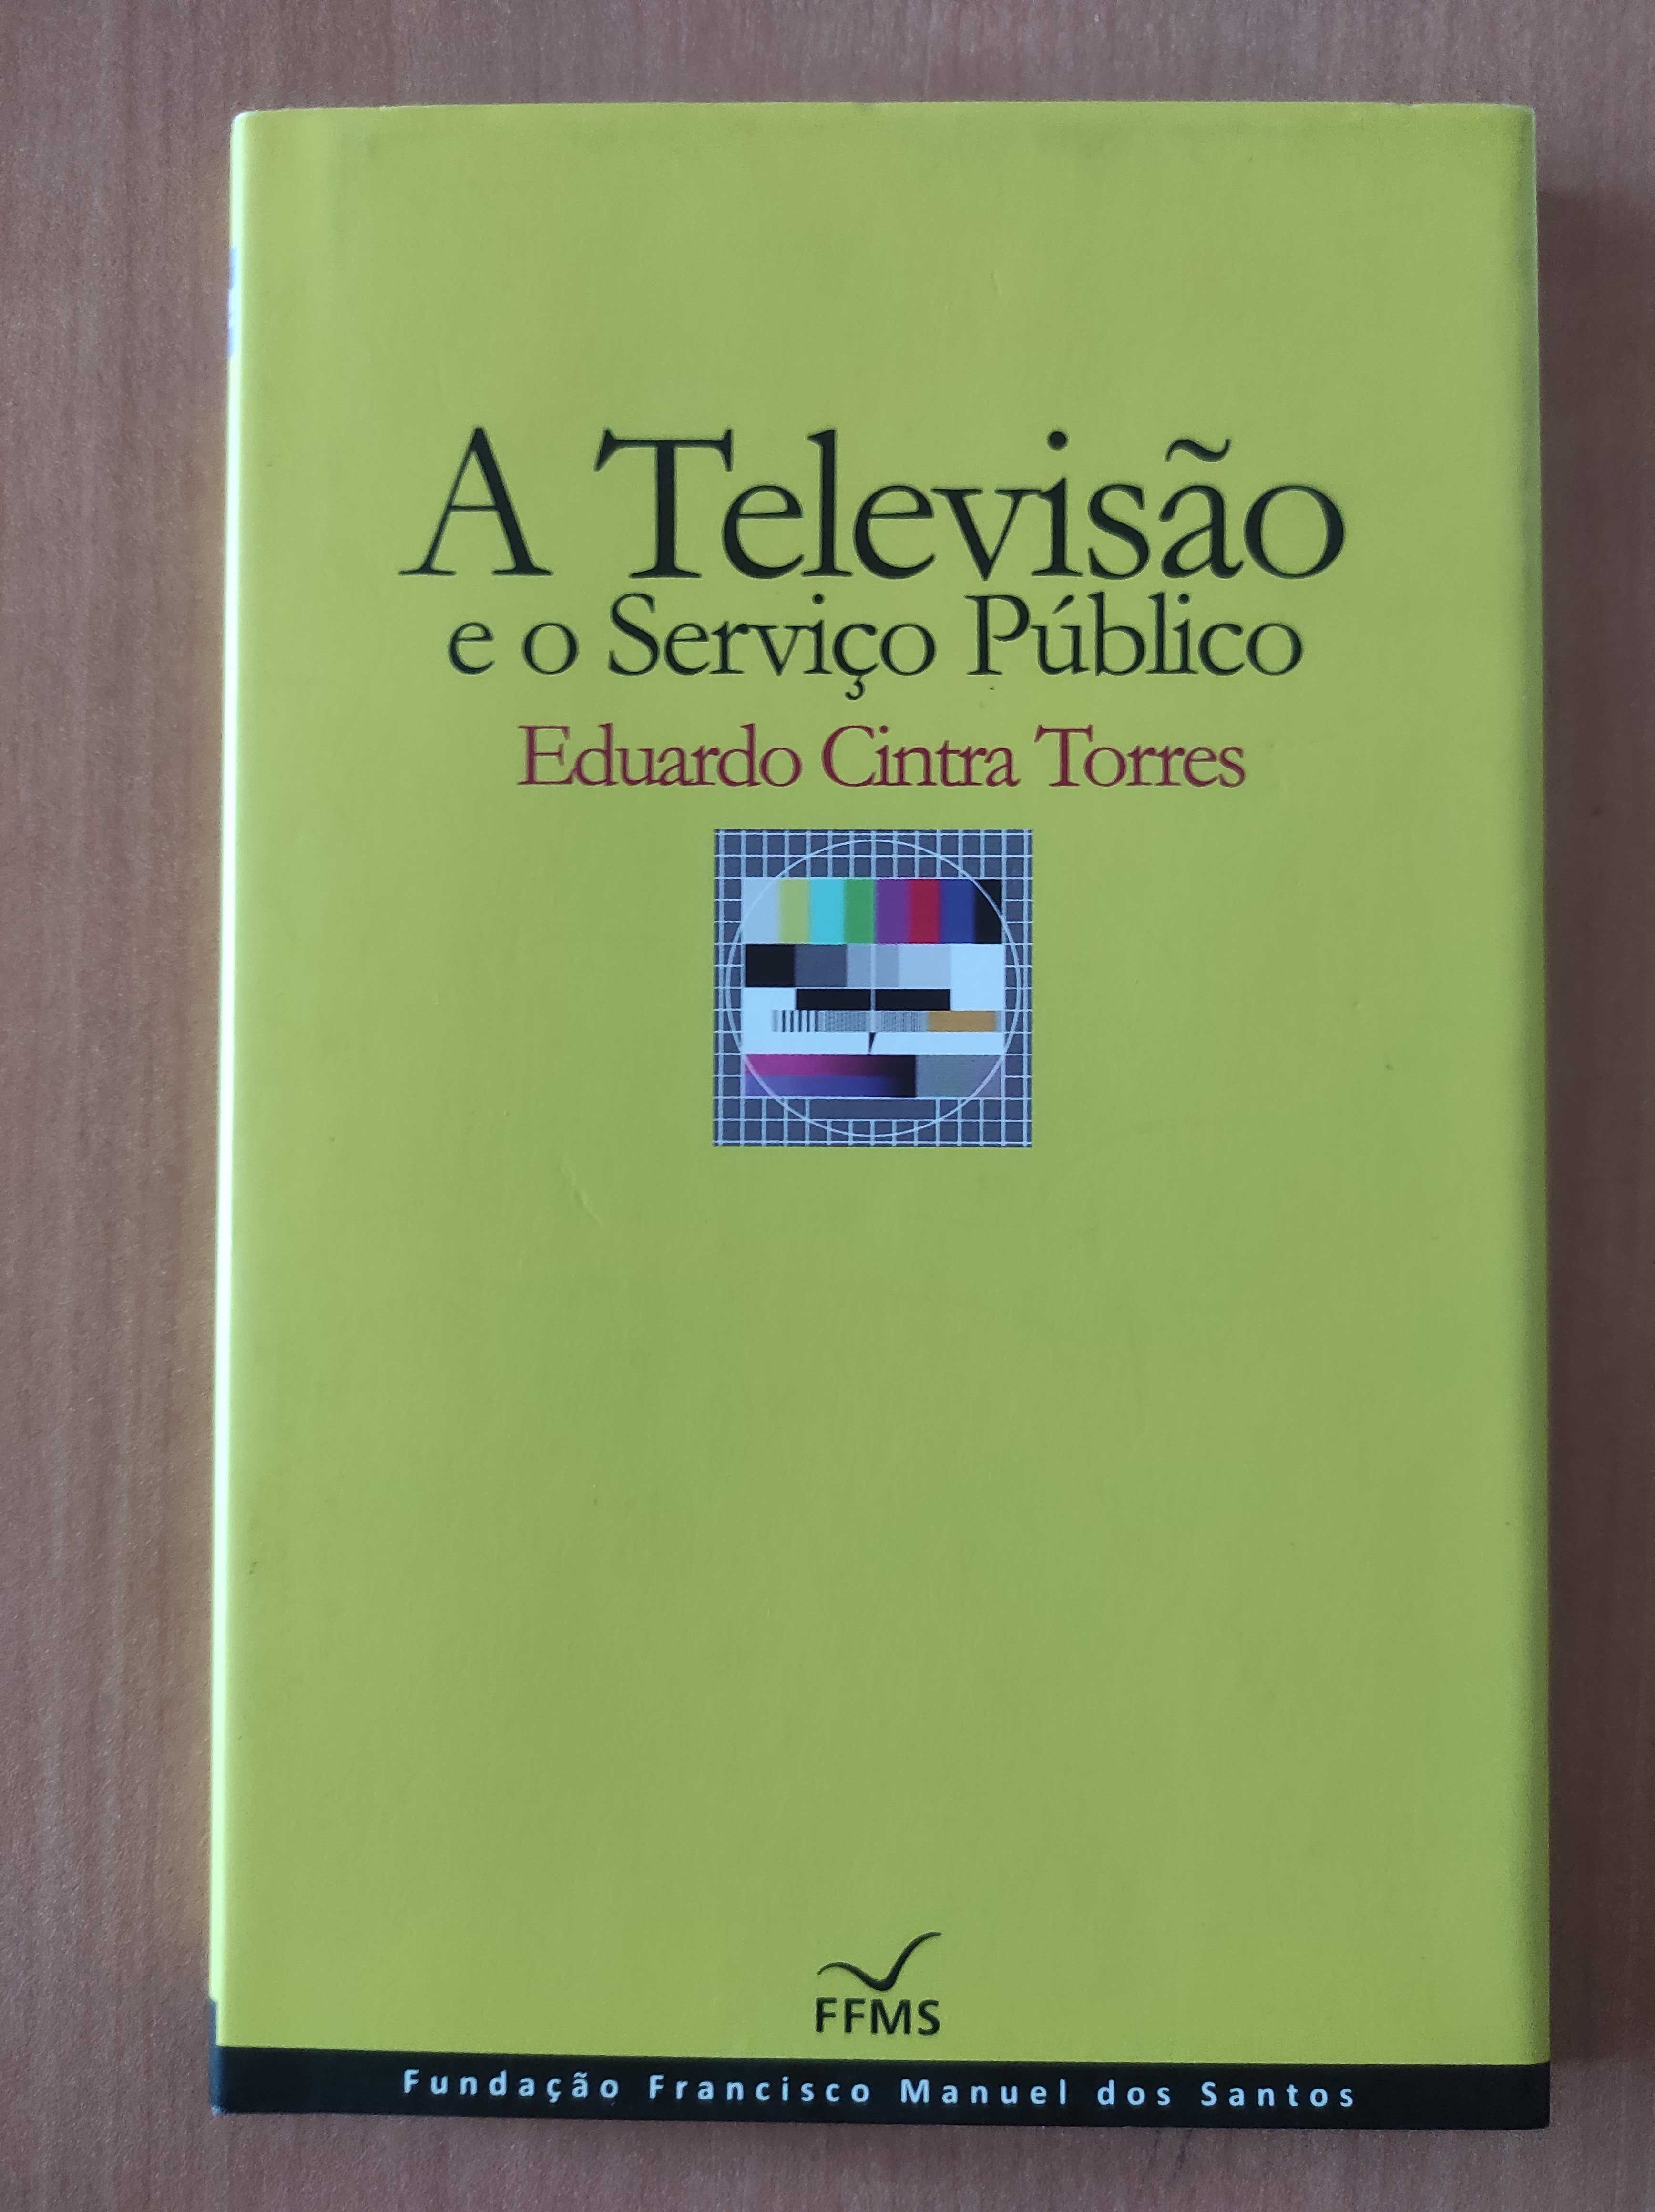 Livro "A Televisão e o serviço público" (2º livro com desconto)